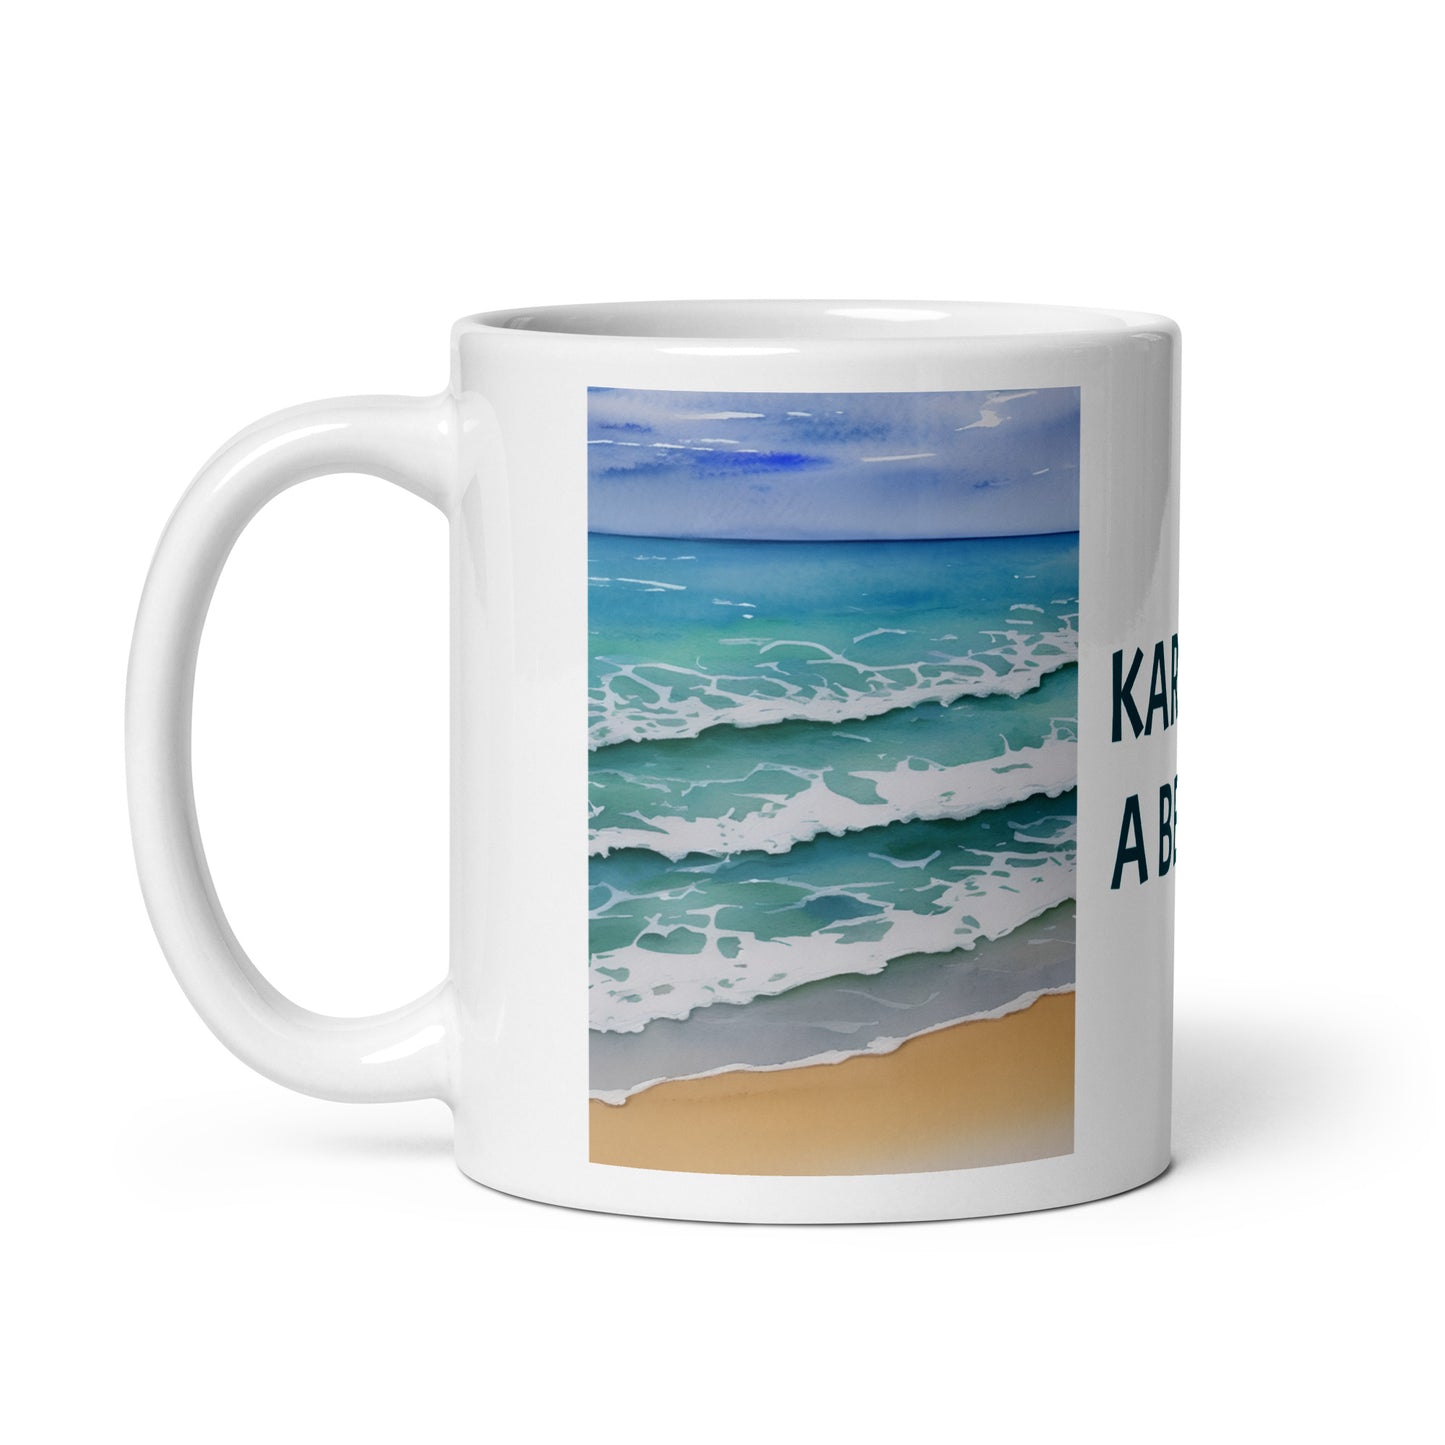 Karma's a beach. White glossy mug.